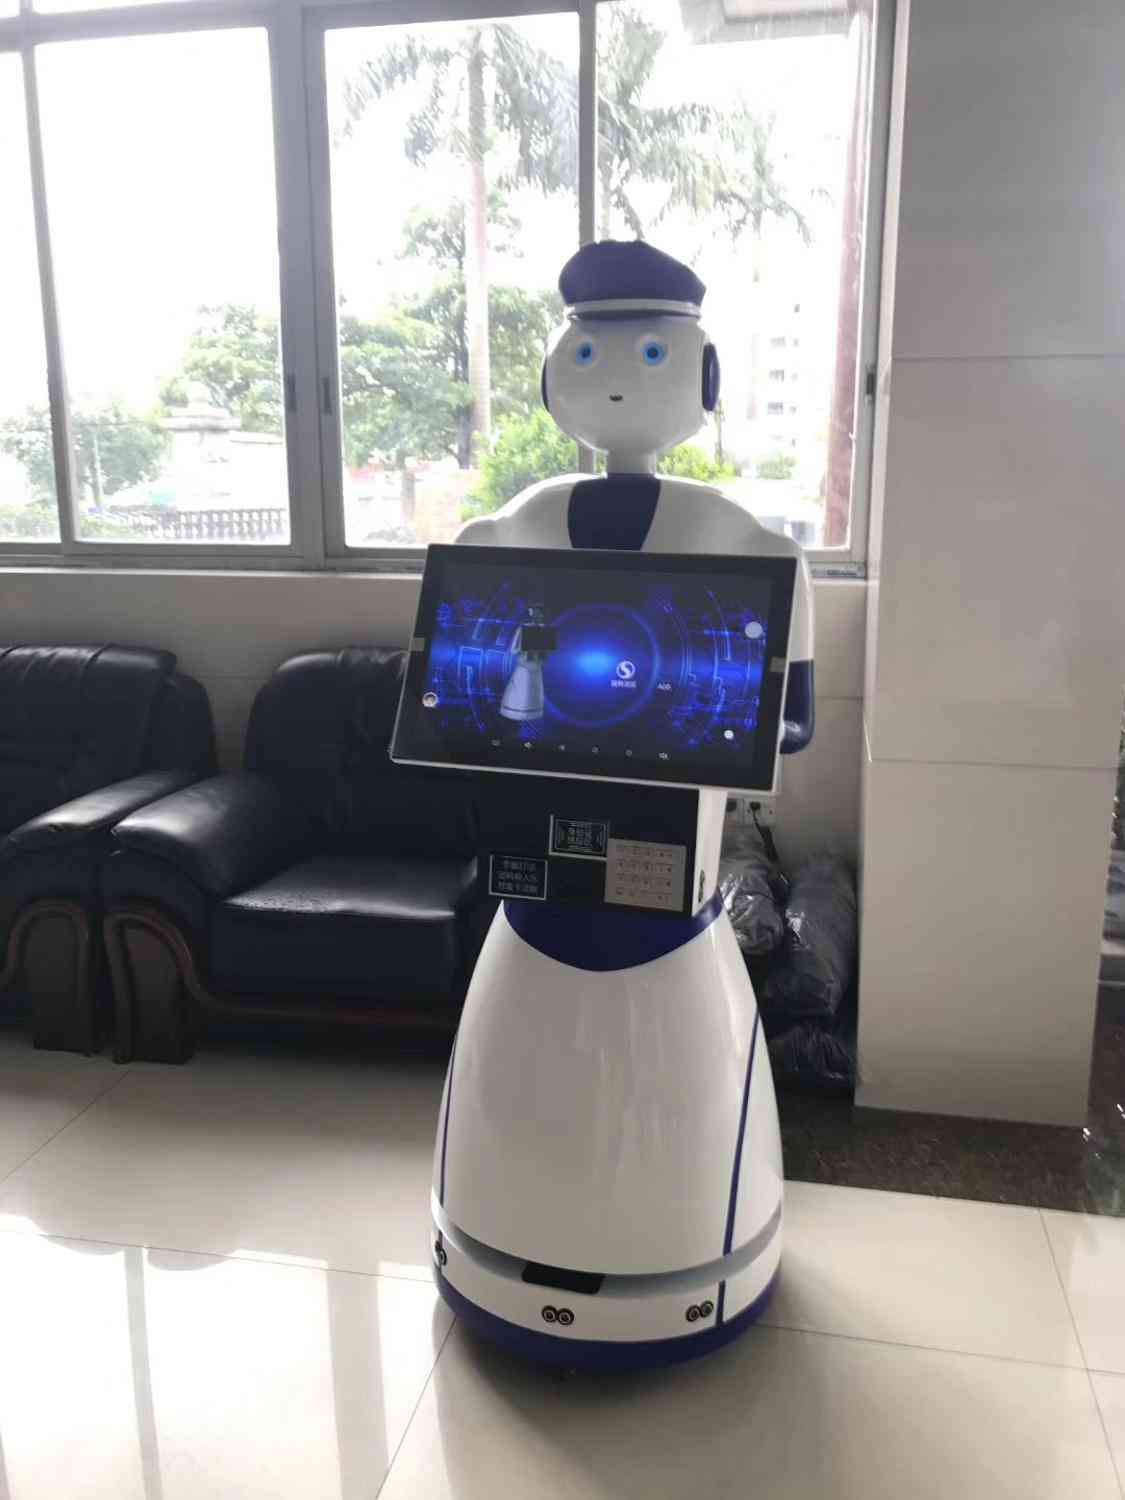 Security Guard Policemen Robot